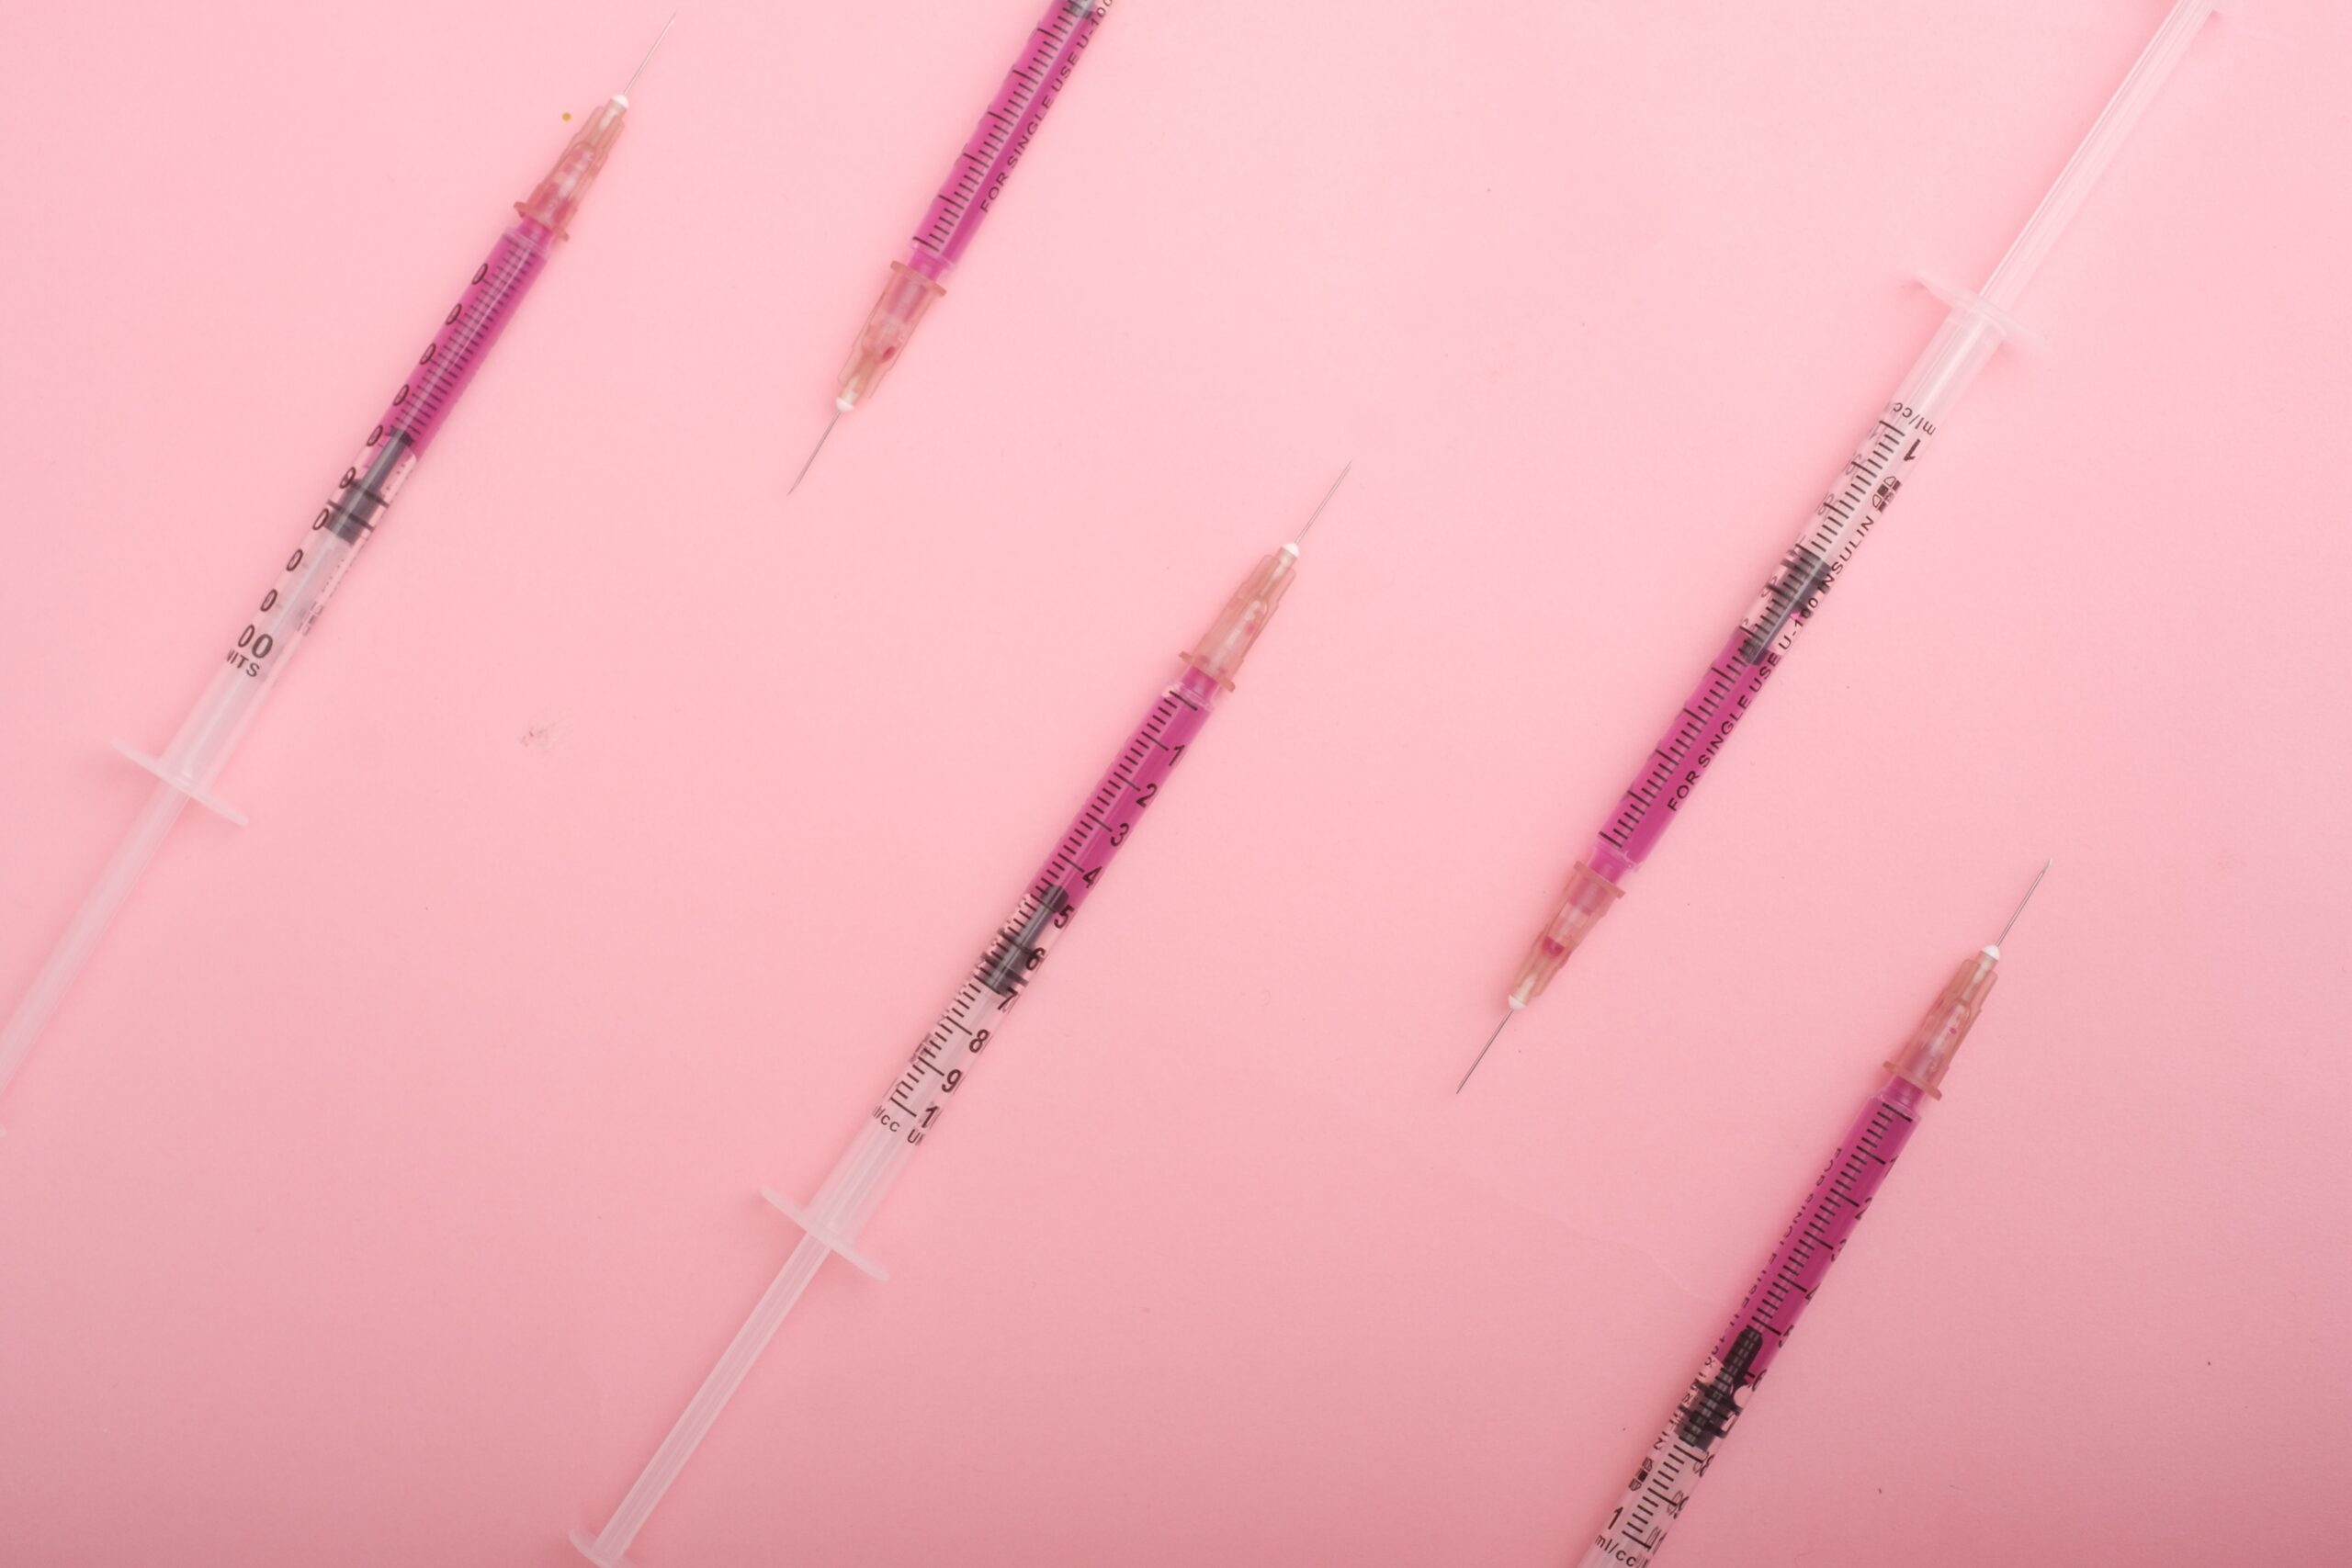 syringes on pink background